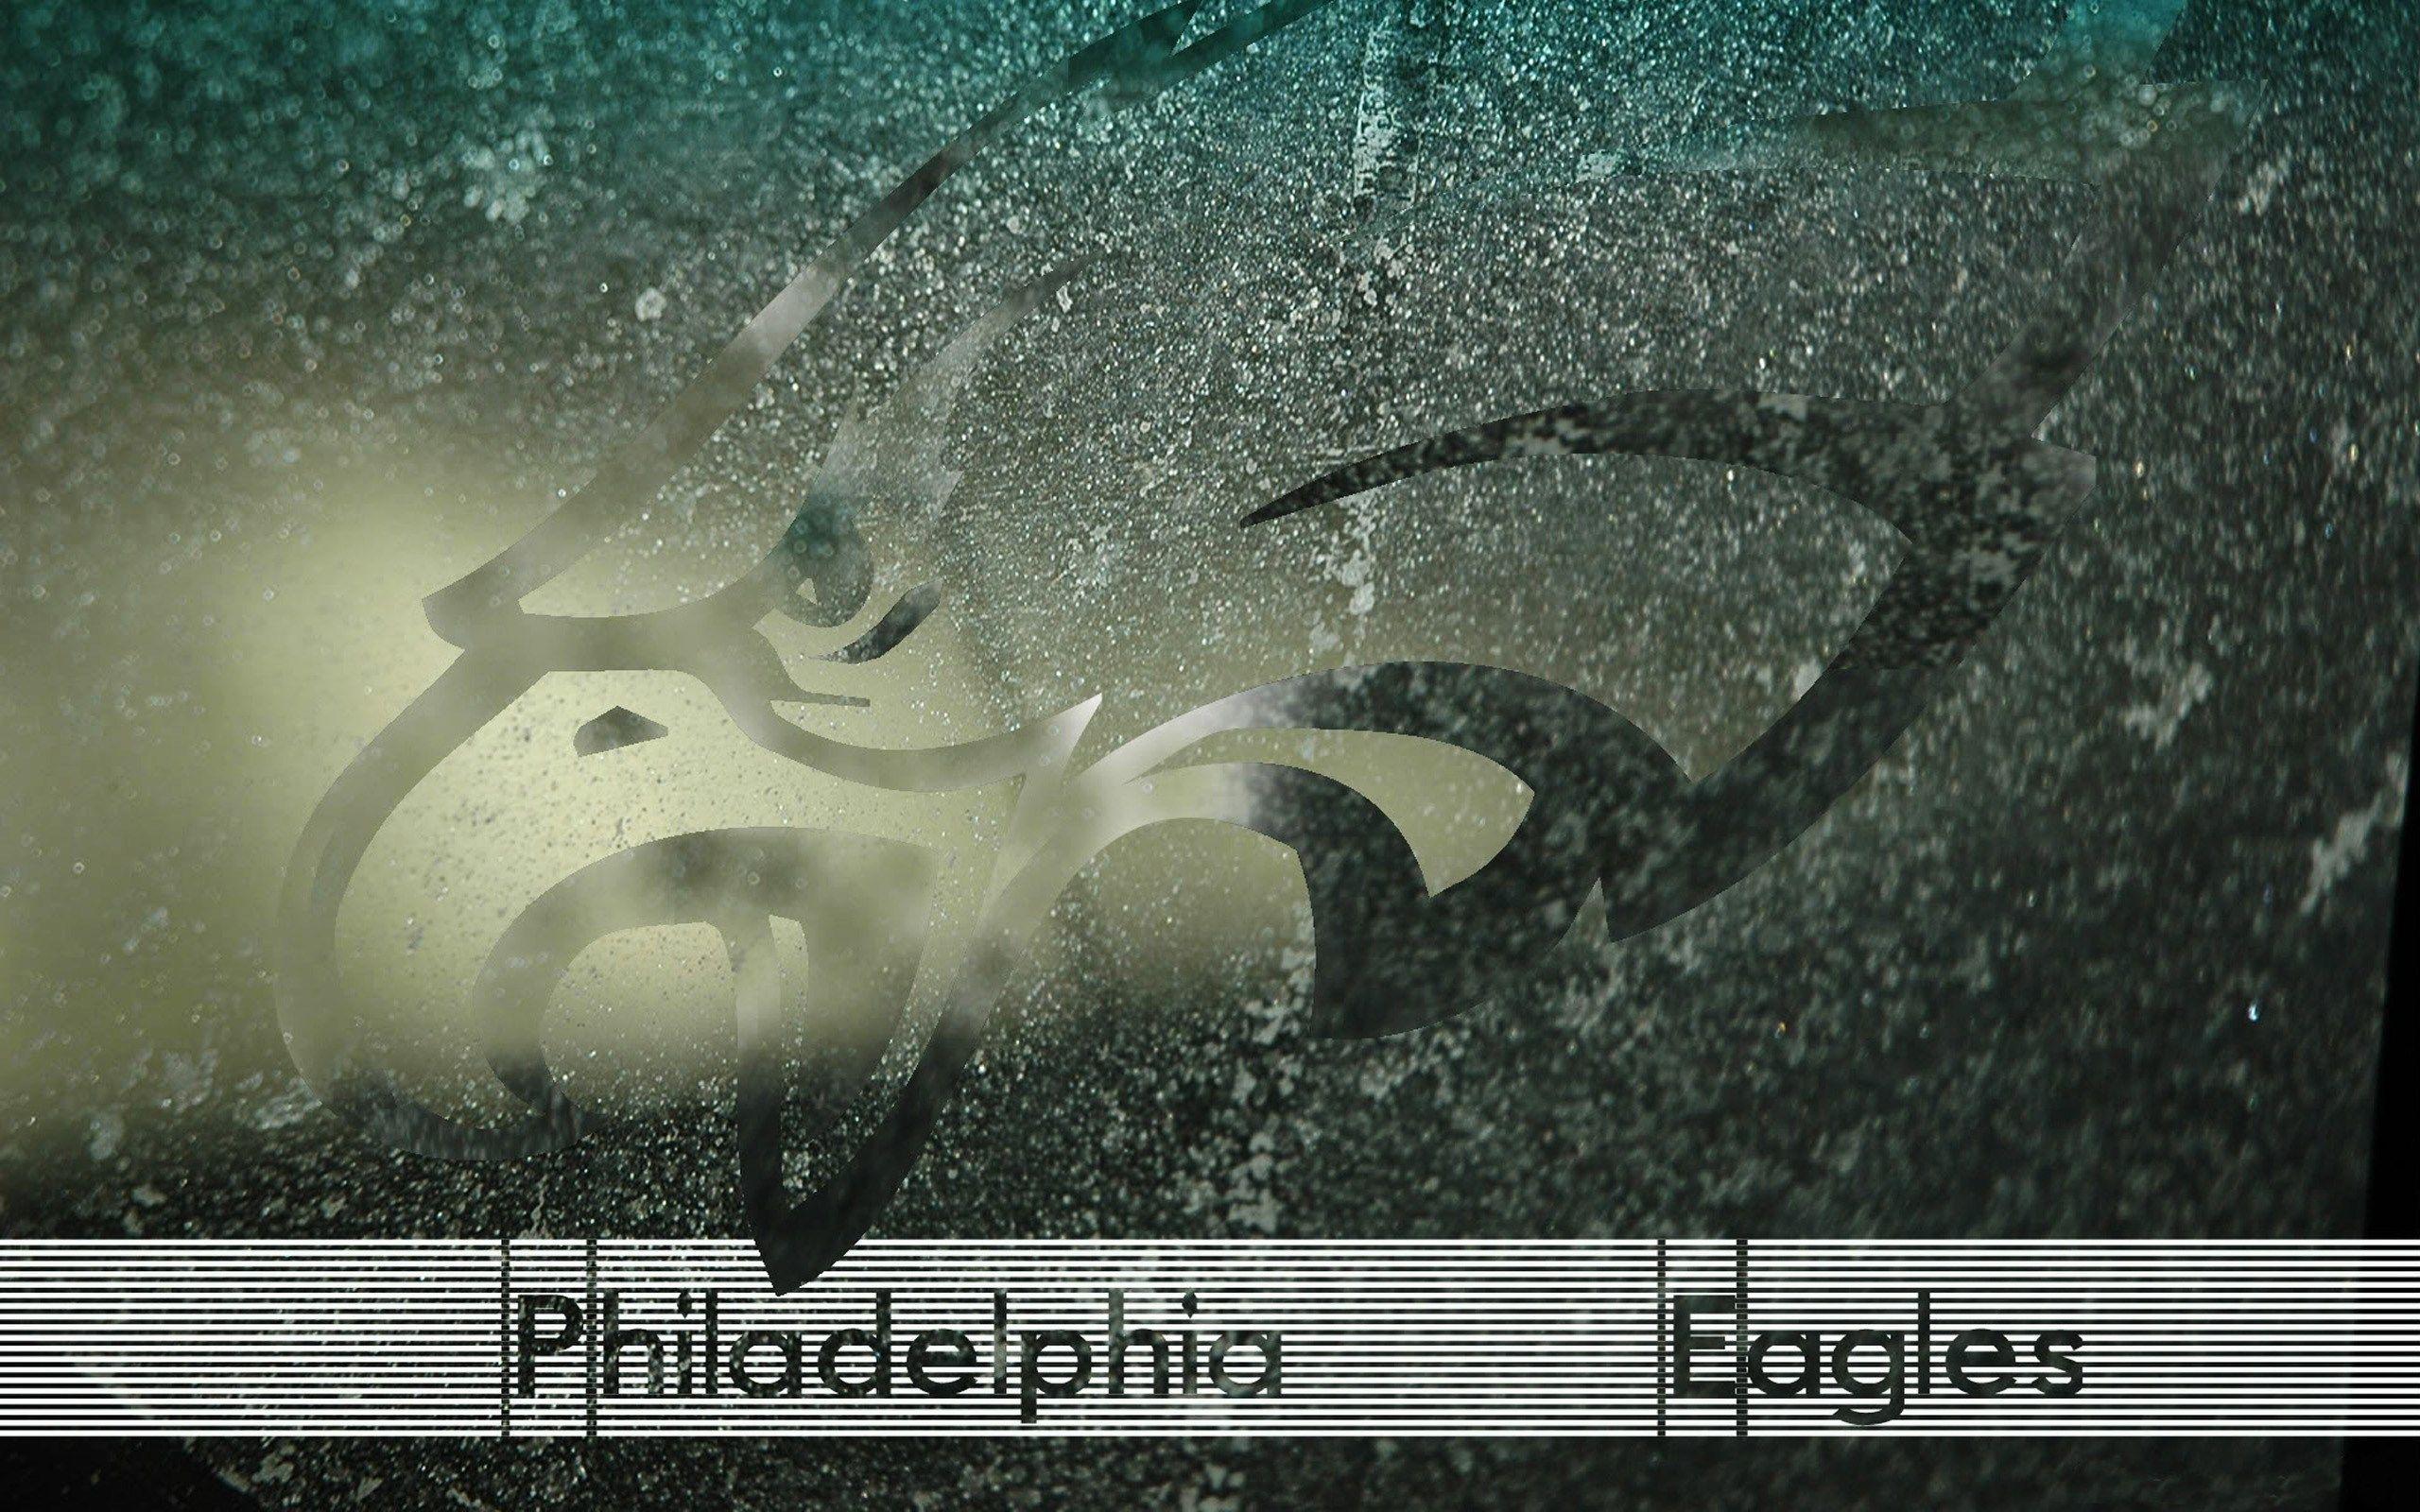 Philadelphia Eagles Wallpaper Hd, Pace Little 2017 03 03